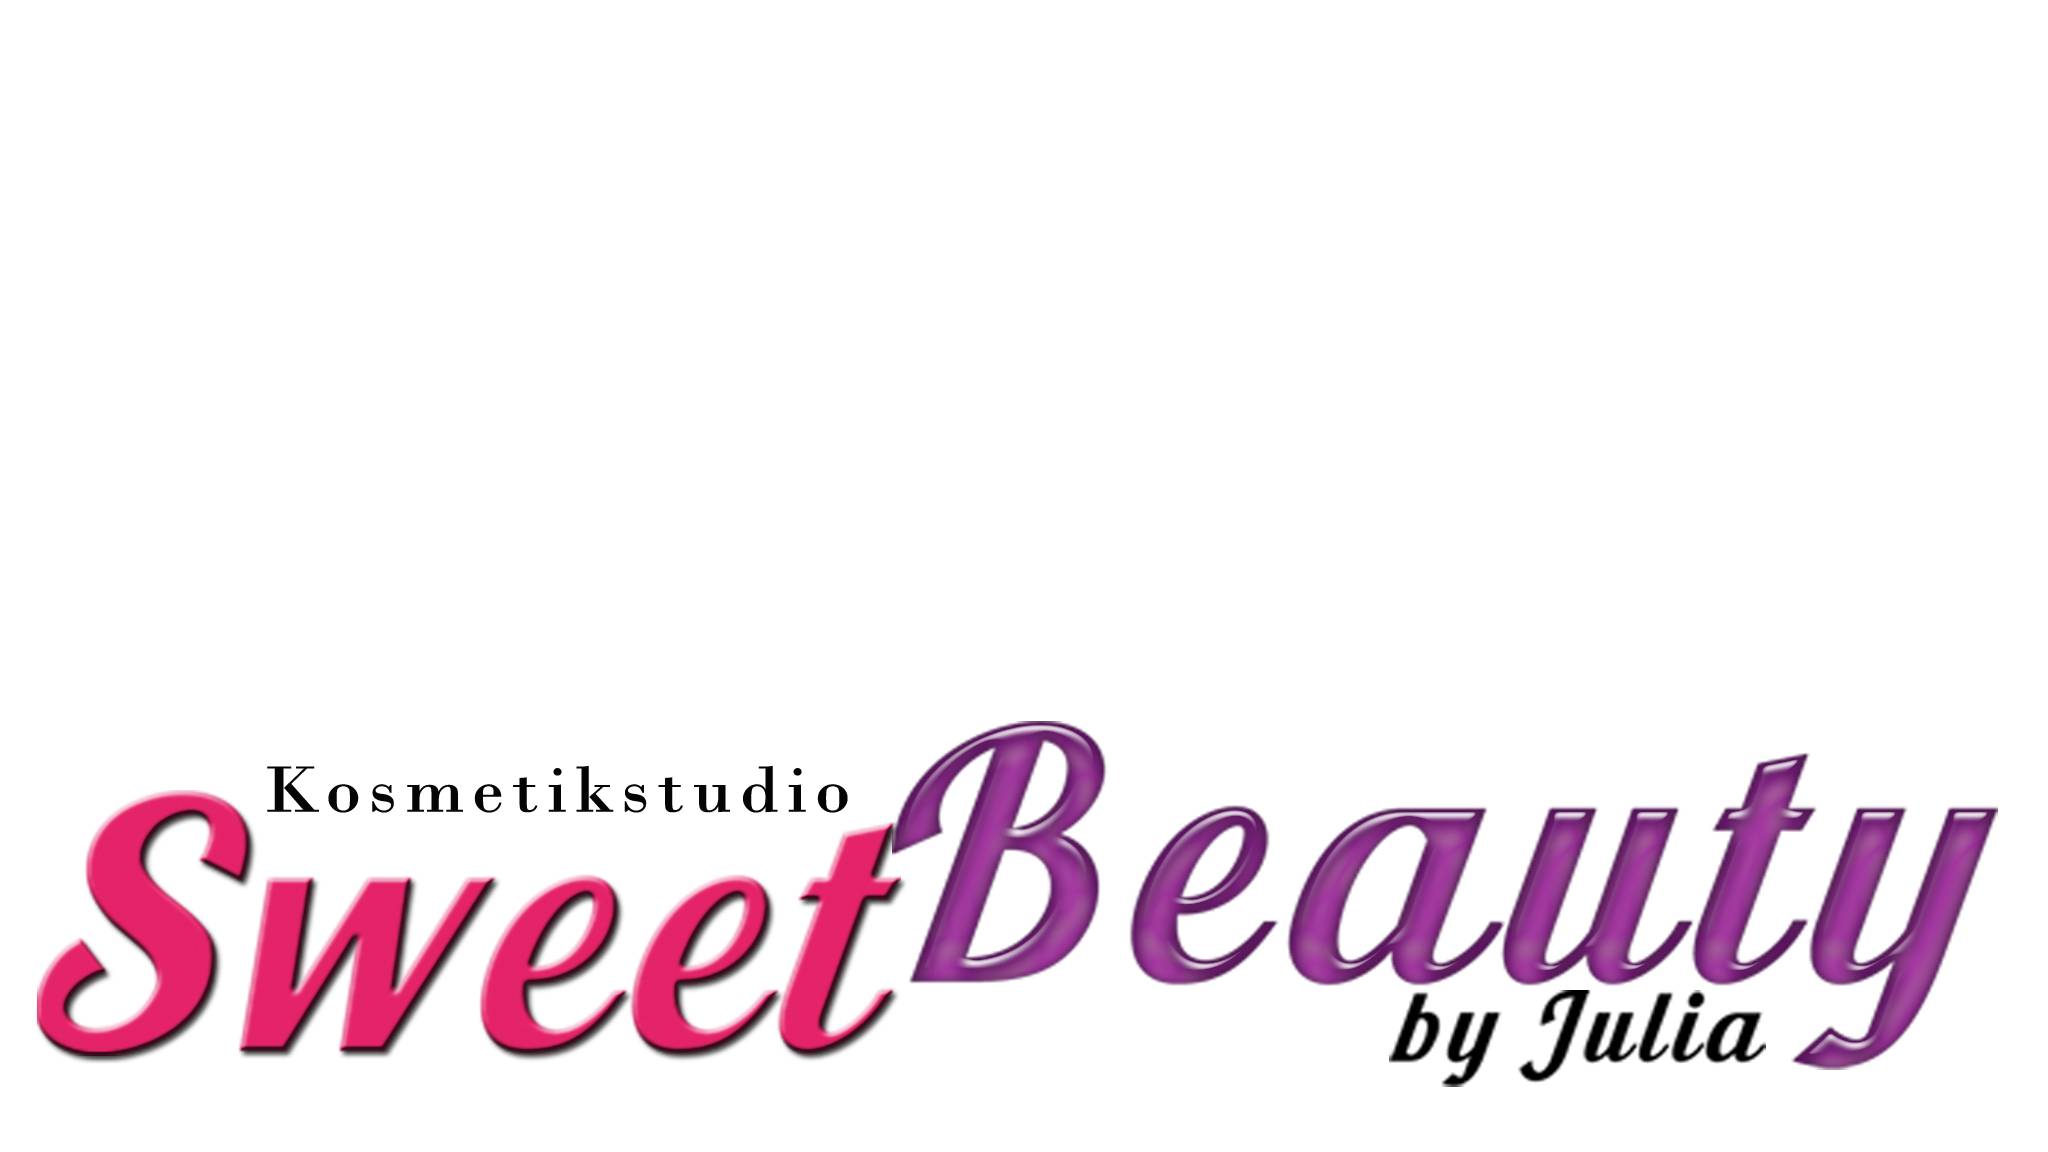 SweetBeauty Kosmetikstudio